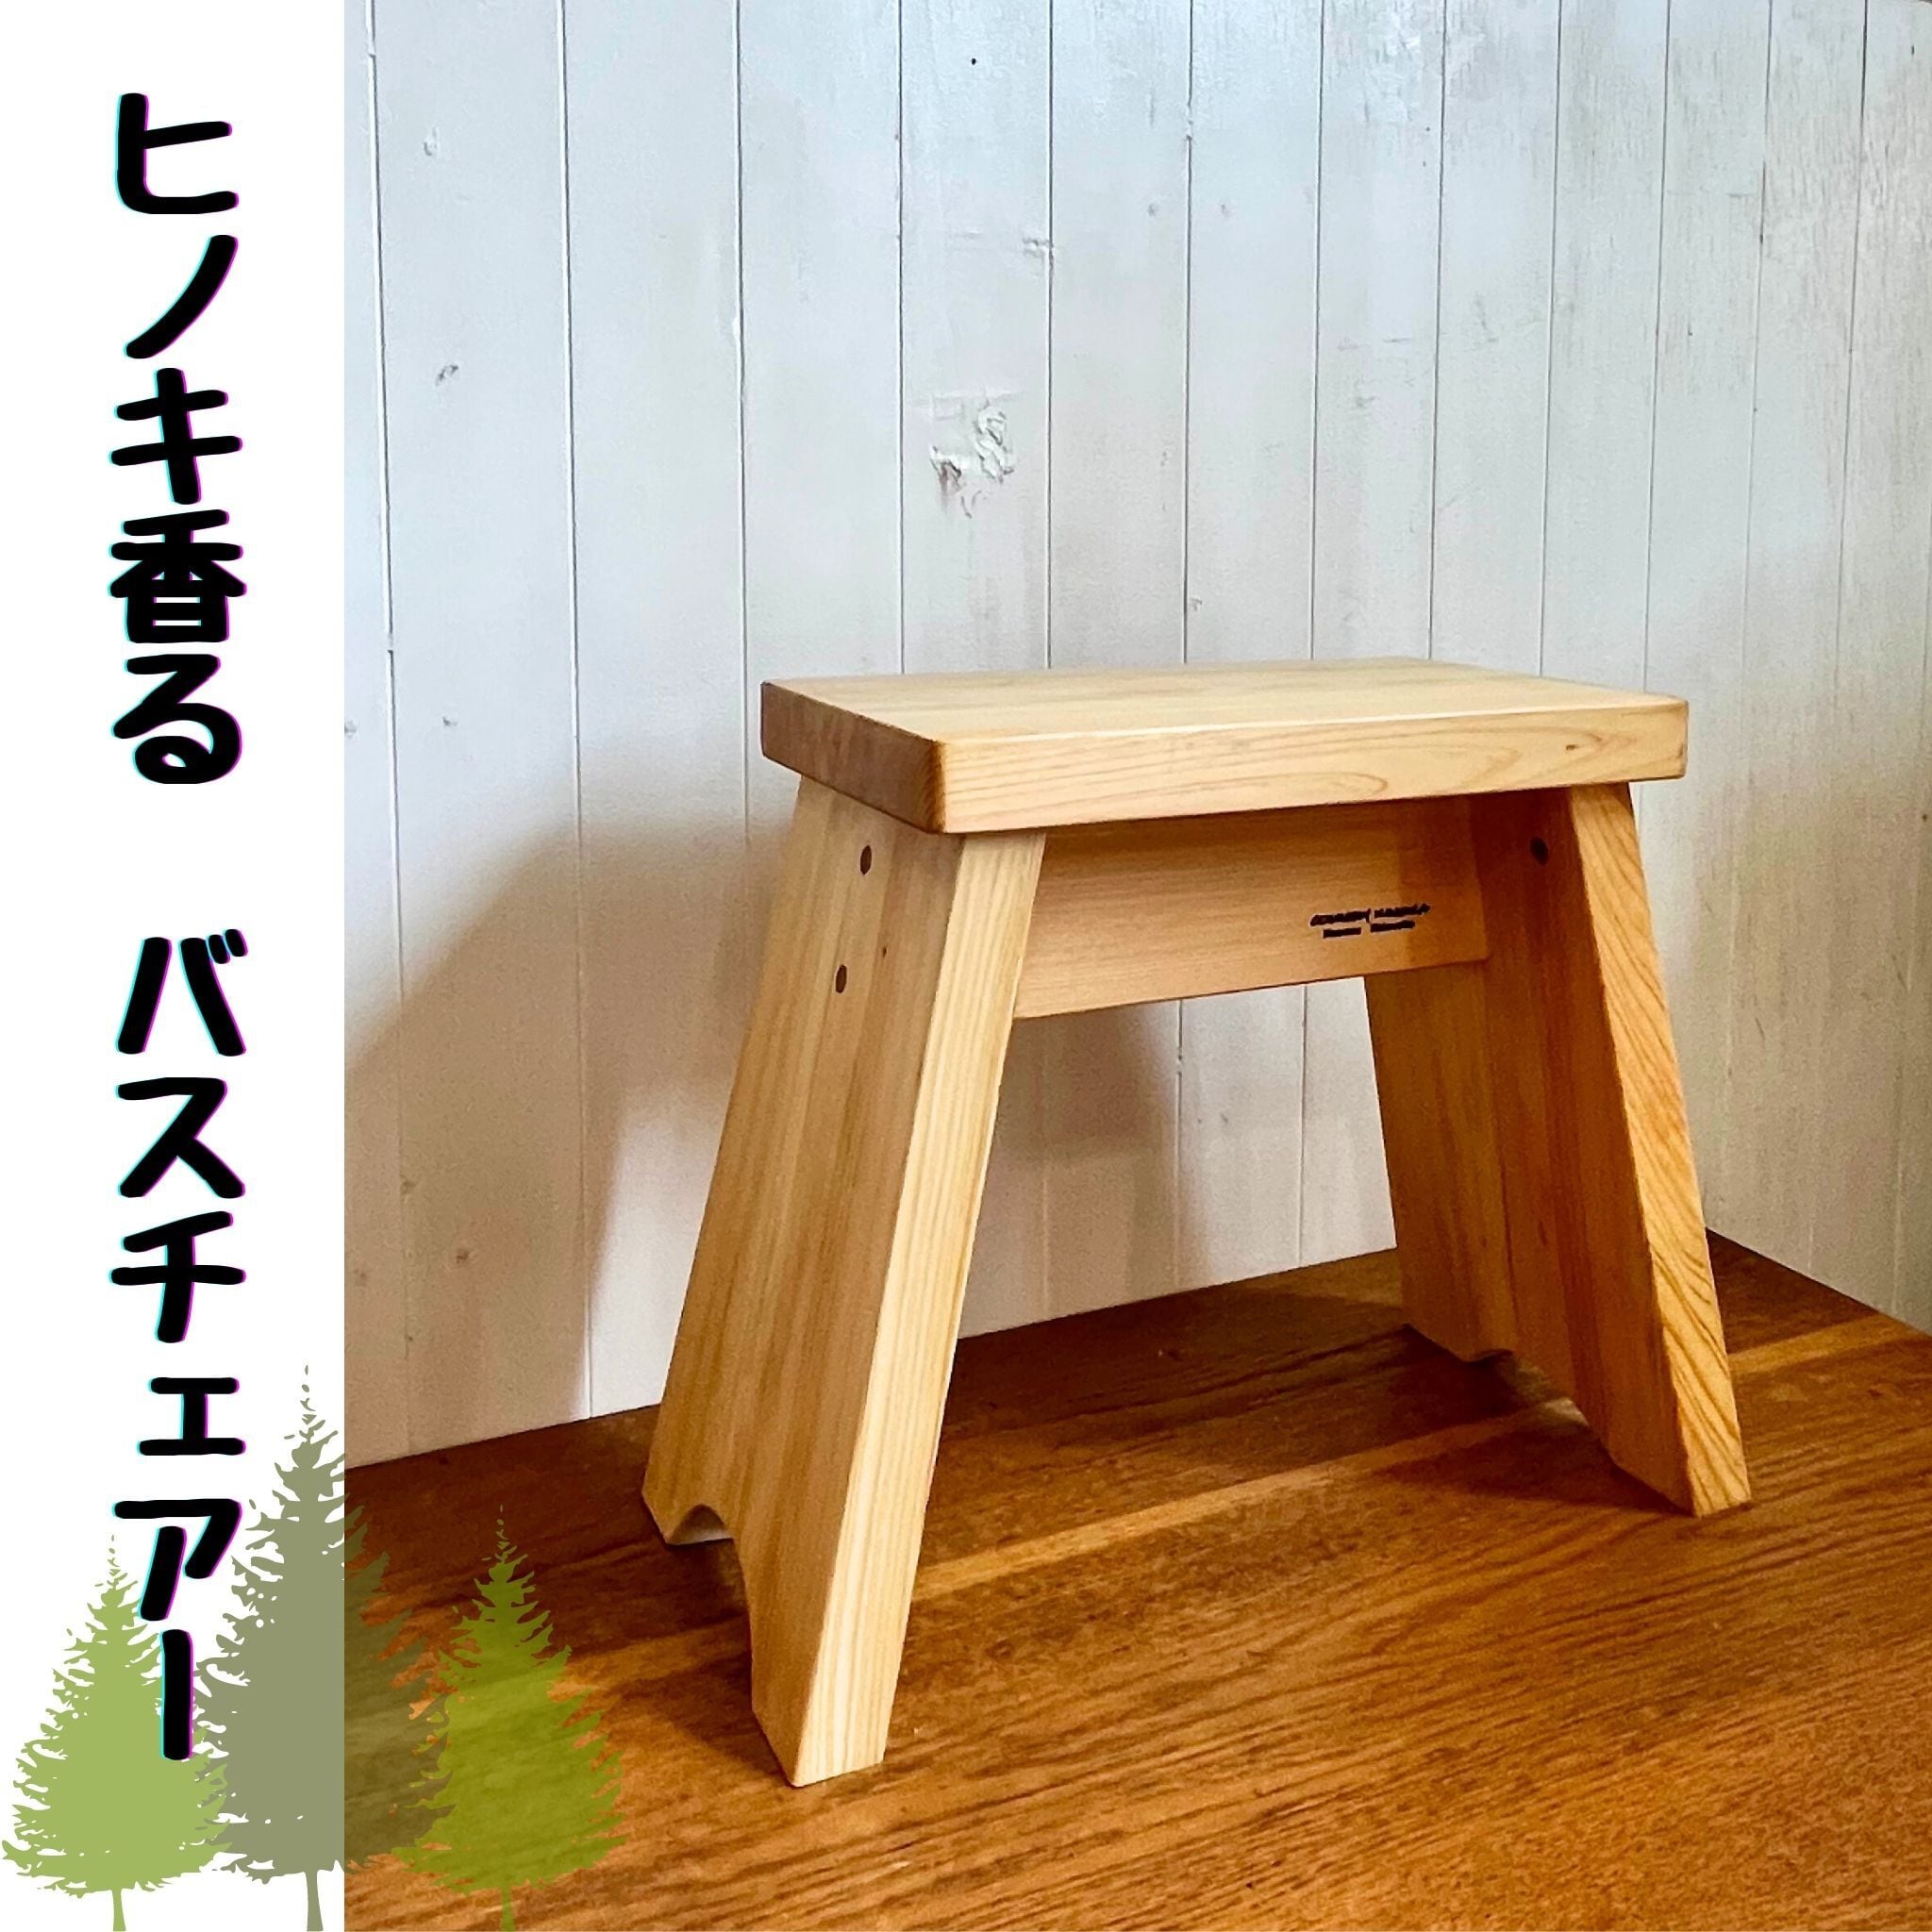 椅子・スツール・ベンチ | オーダー家具のKINOKA